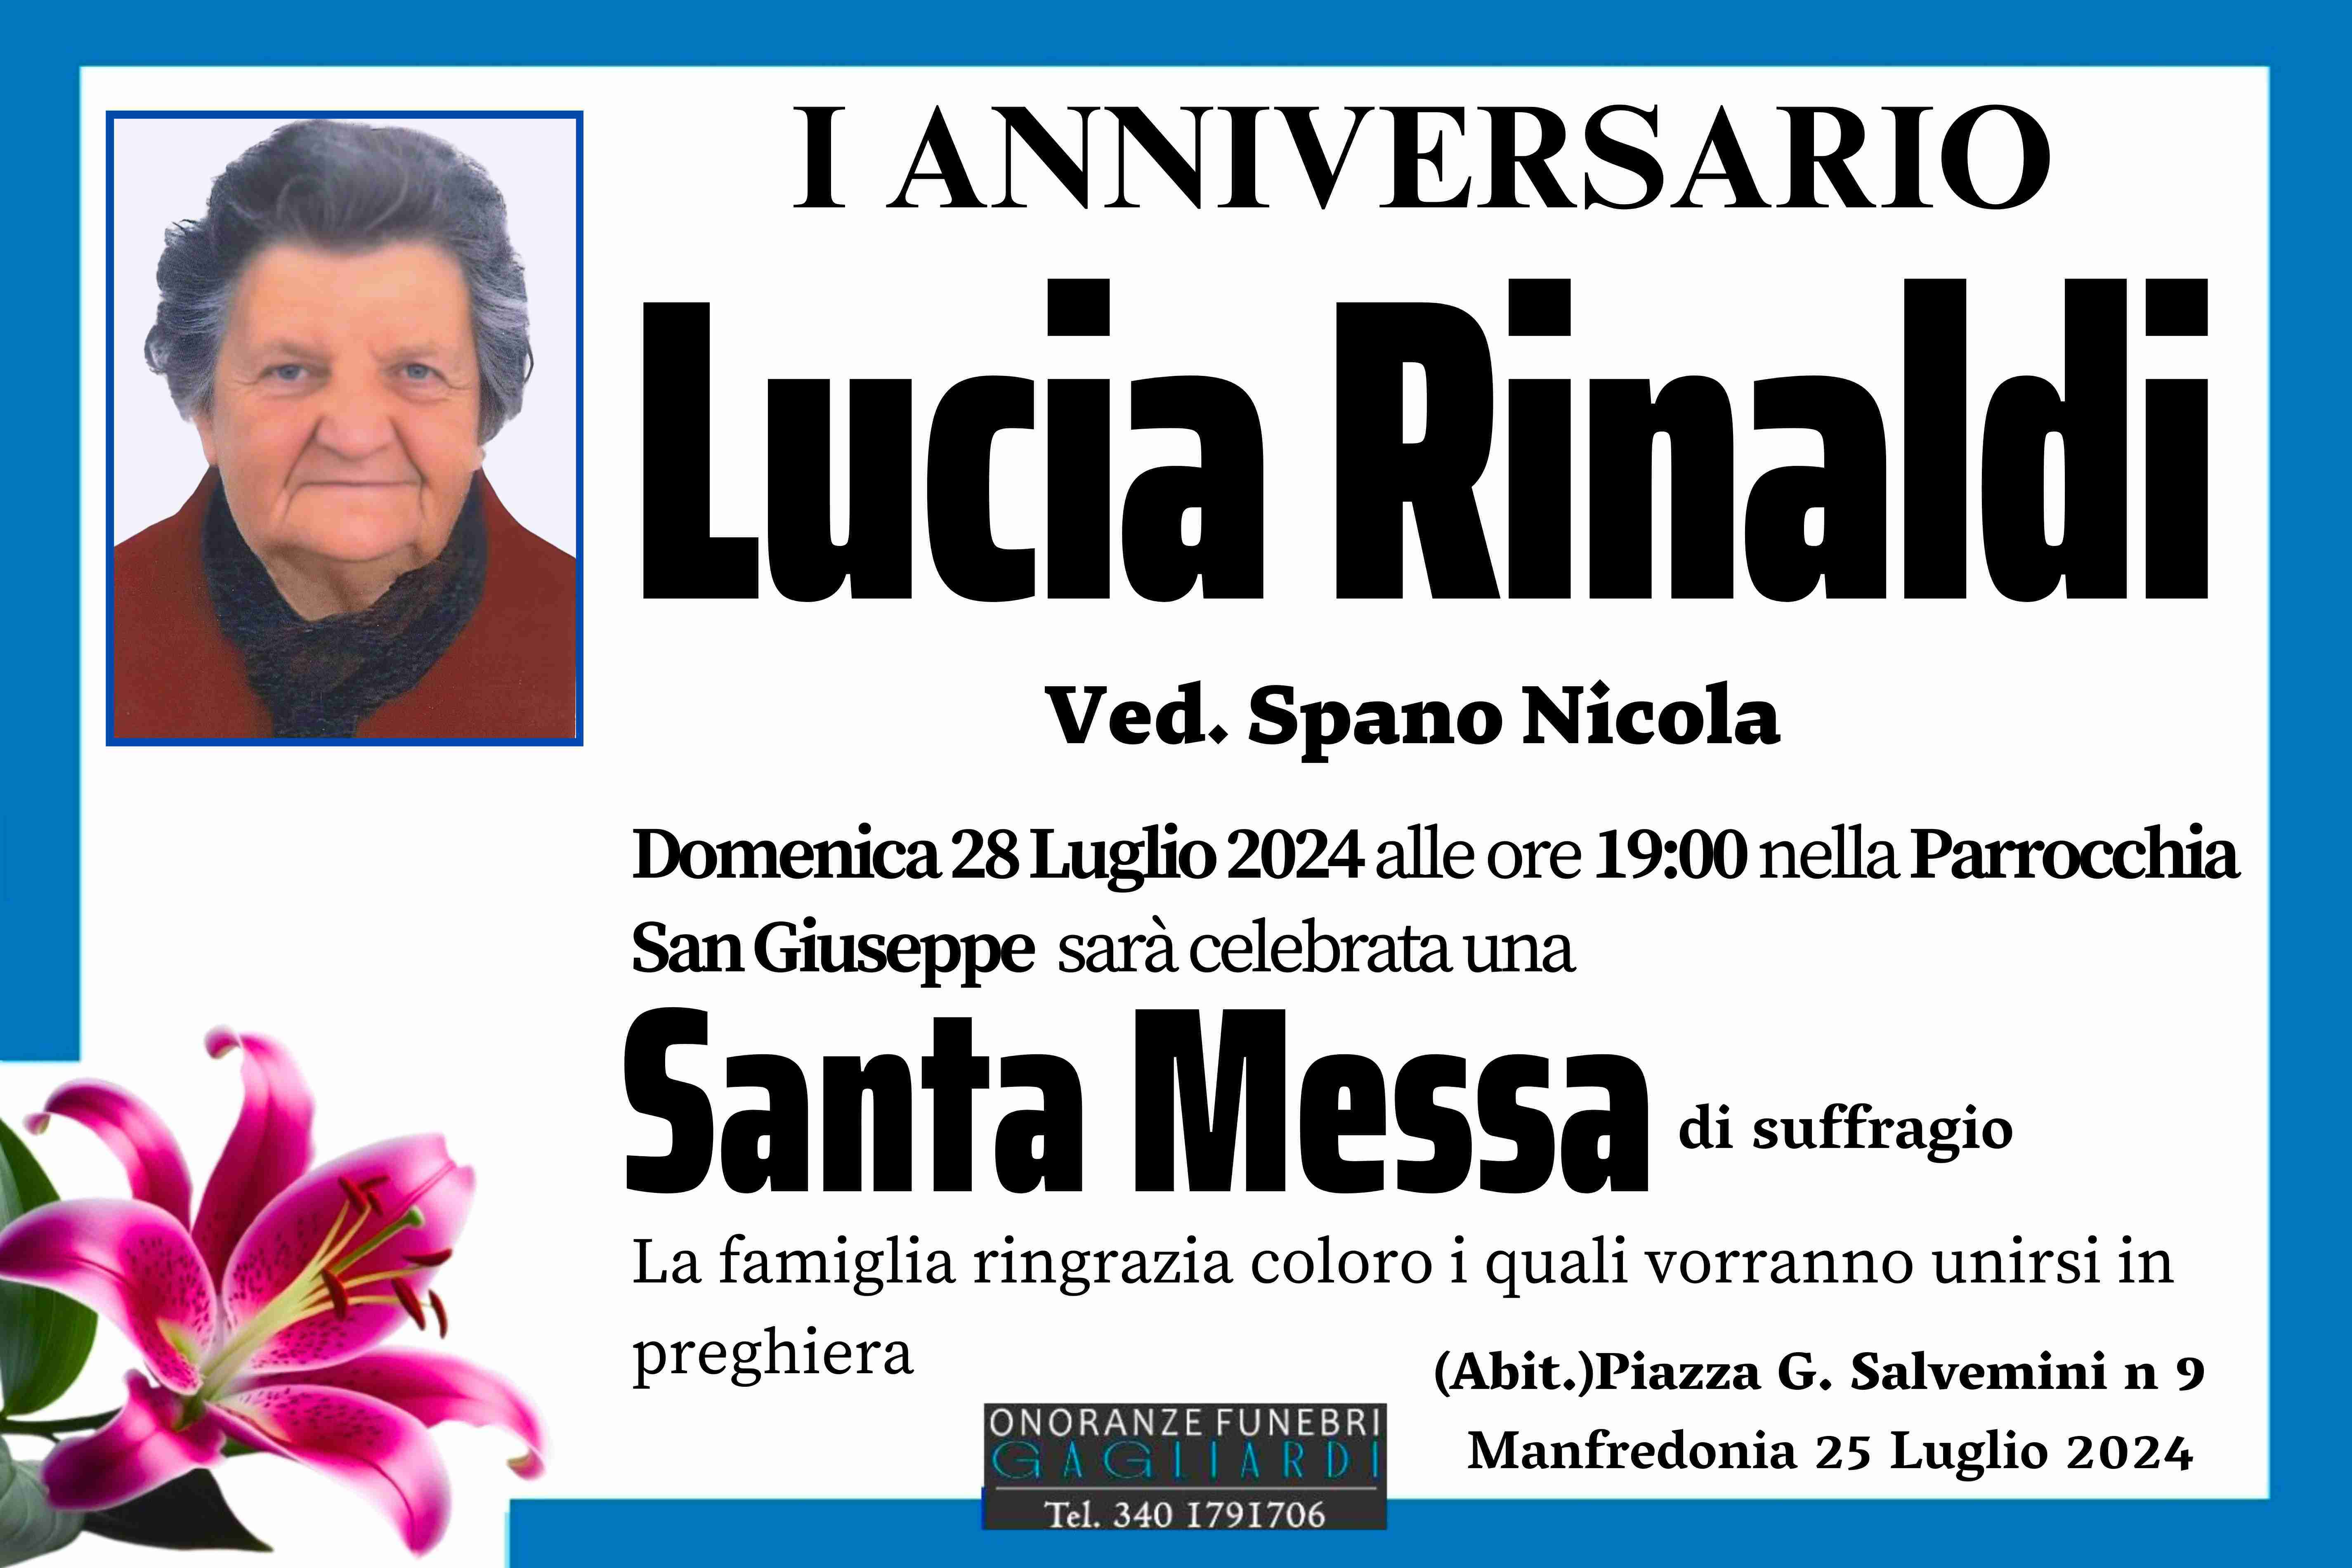 Lucia Rinaldi Ved. Spano Nicola